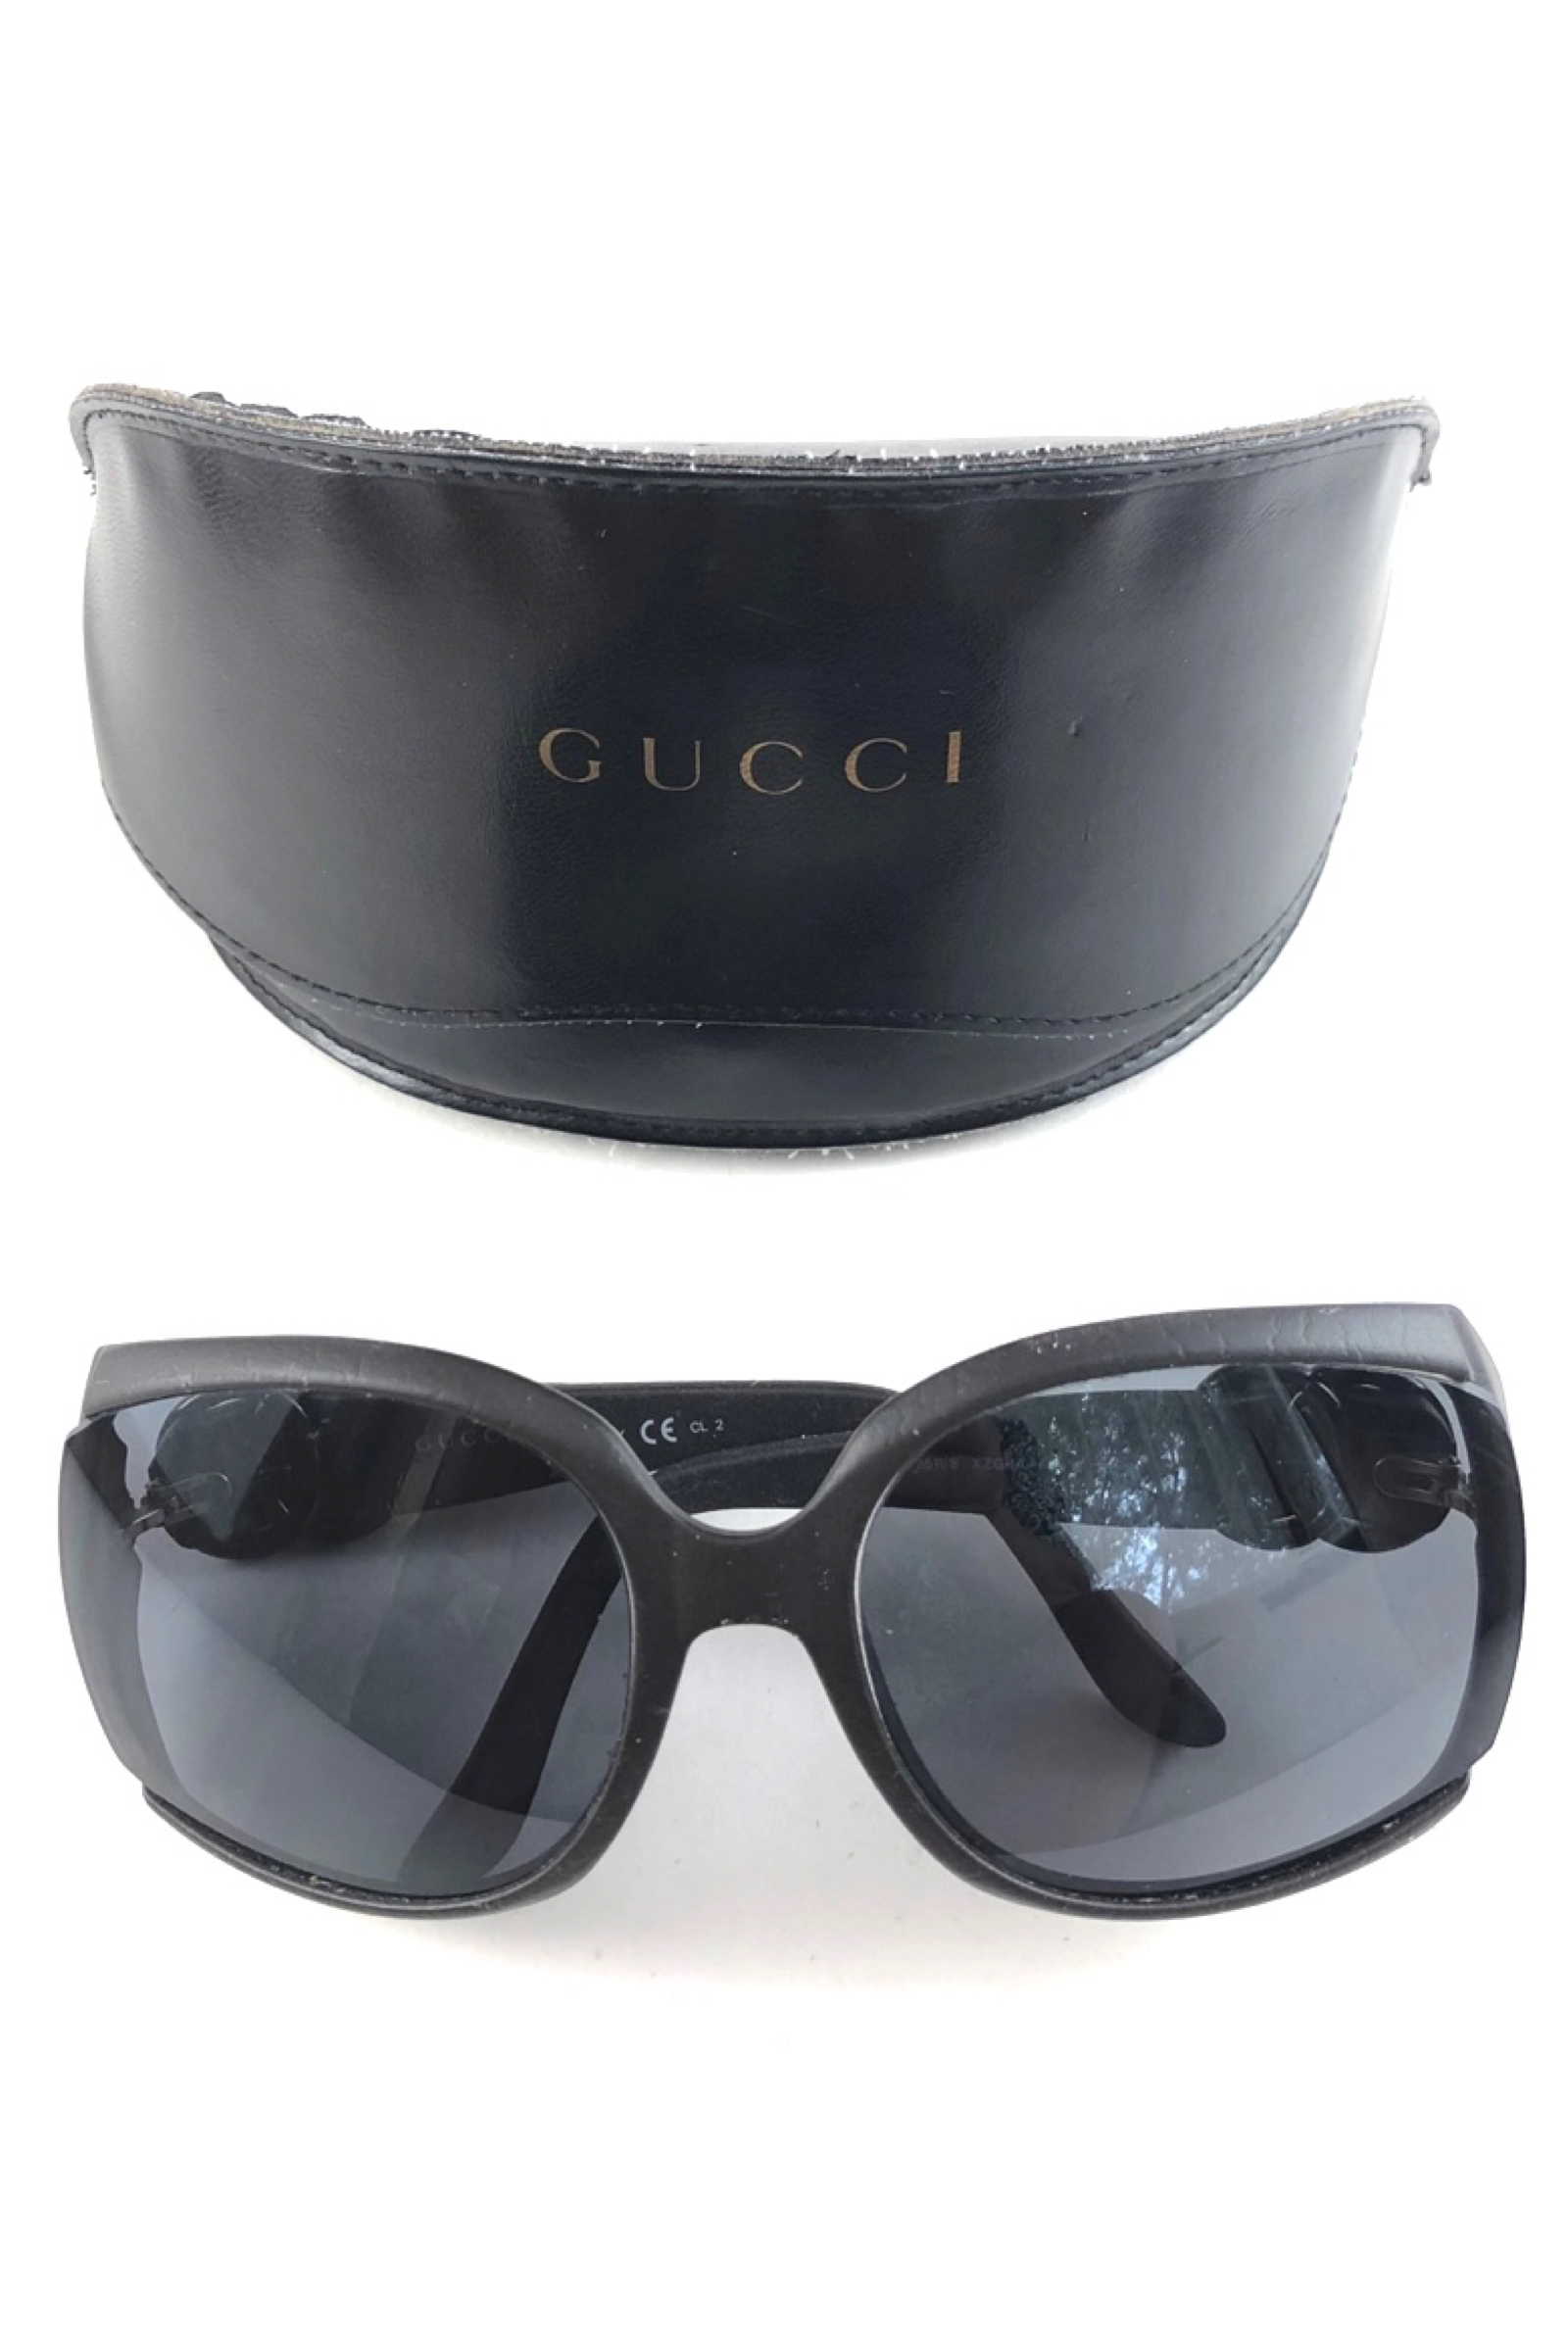 gucci sunglasses case 2018